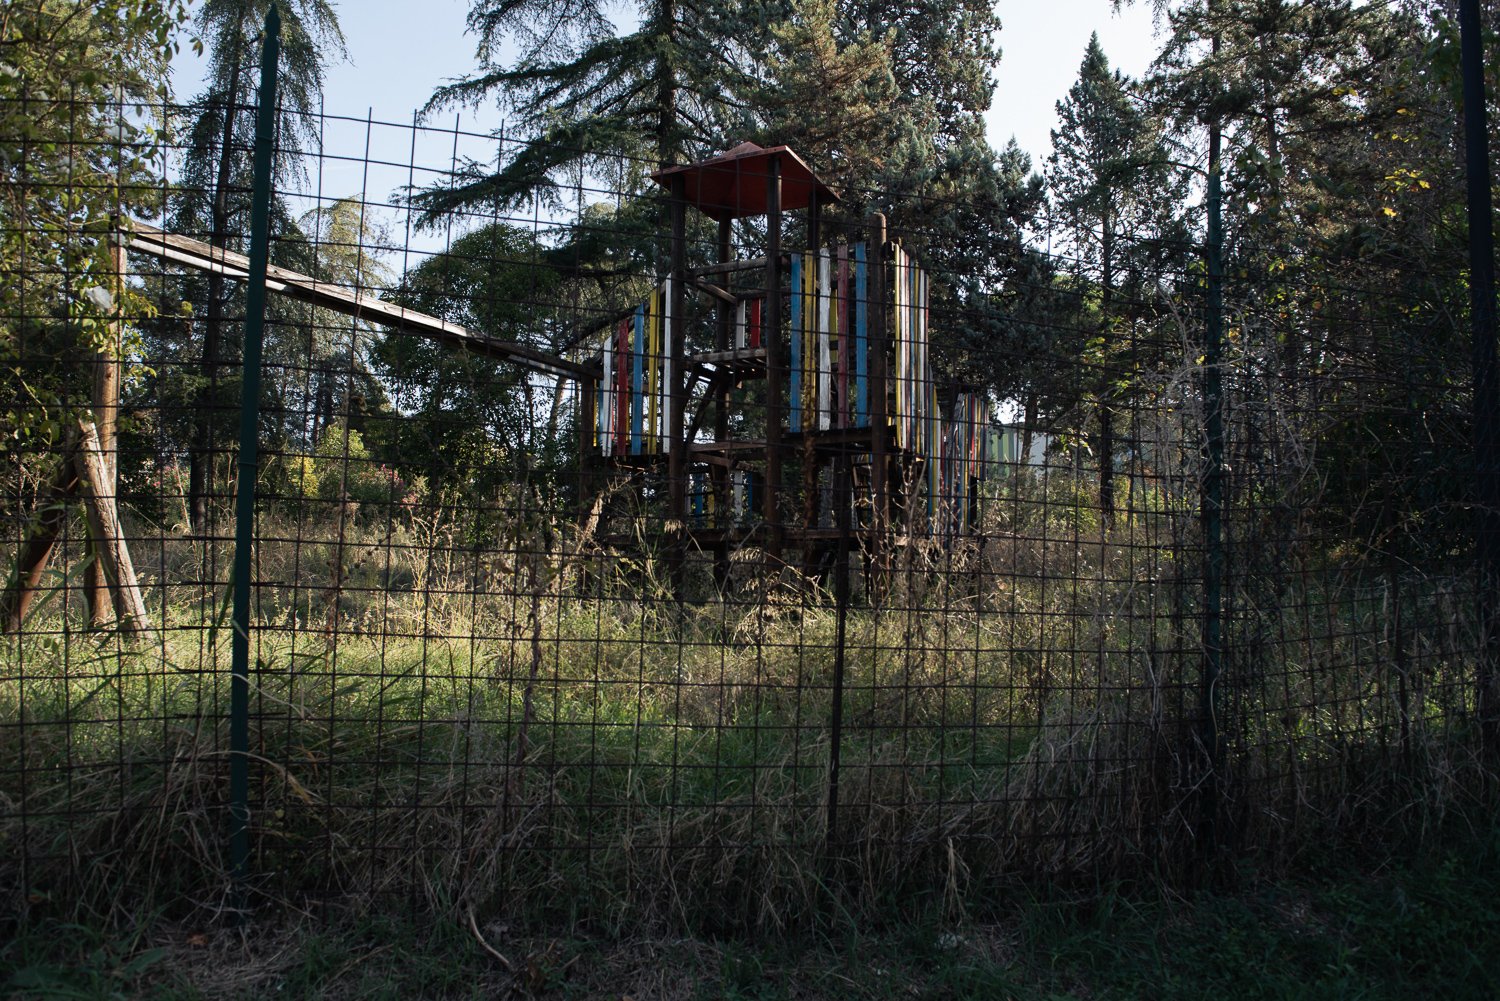  l parco Rosselli, tra due scuole dell’infanzia e a ridosso del torrente Serra, è stato chiuso nel 2015 dopo la caduta, causata dal vento forte, di alcuni alberi. In seguito all’analisi del terreno è stata riscontrata la presenza di scorie di lavoraz